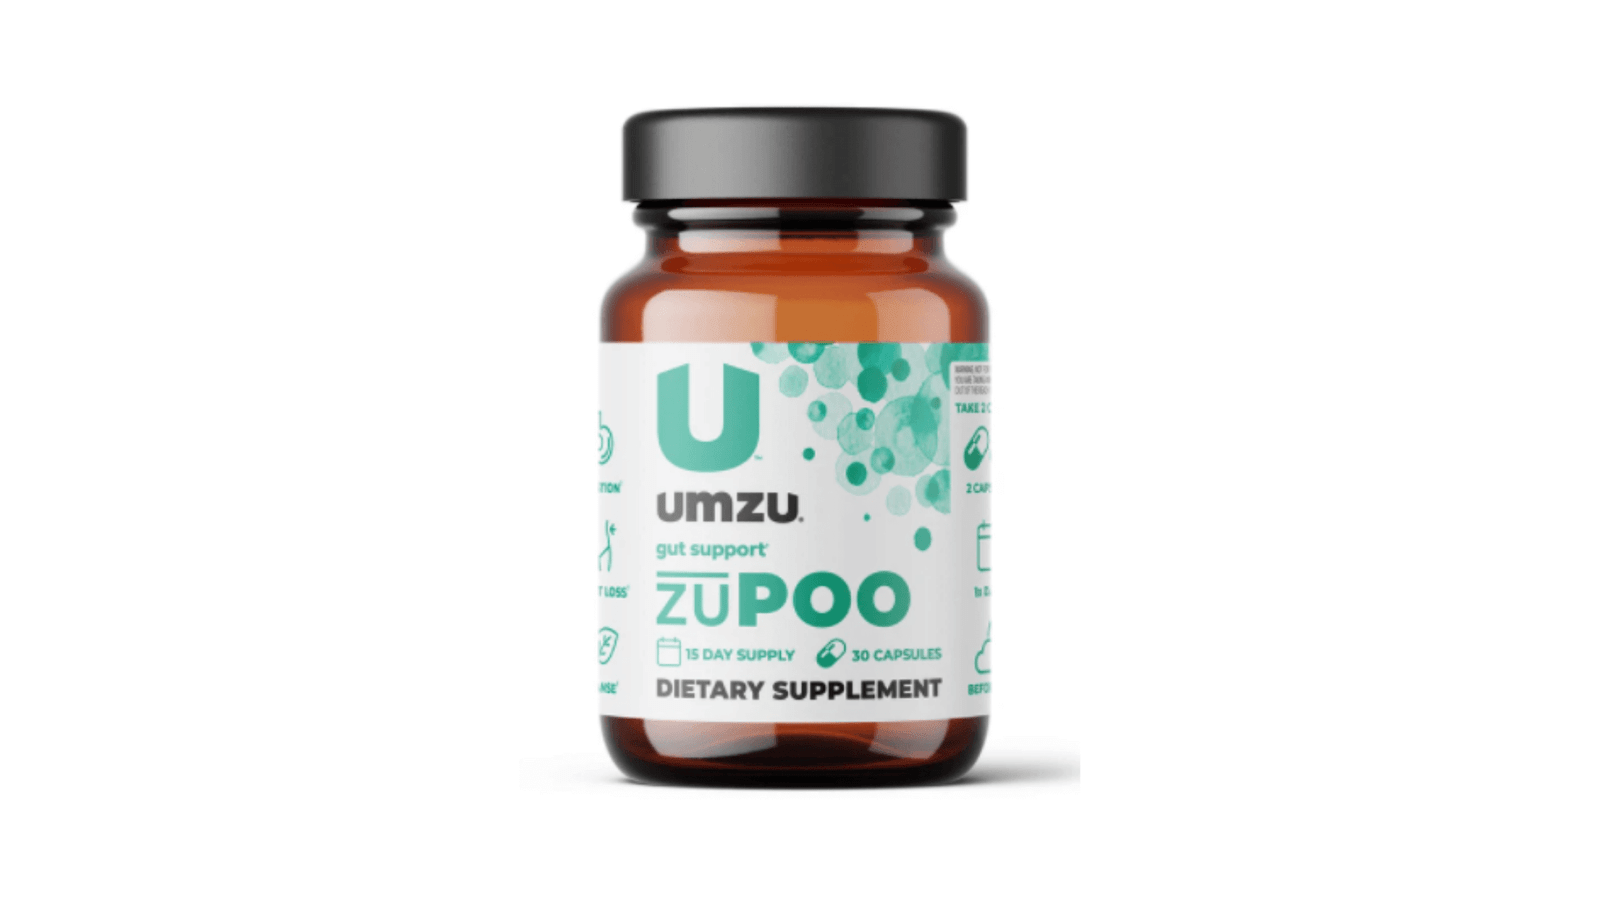 UMZU zuPOO Reviews